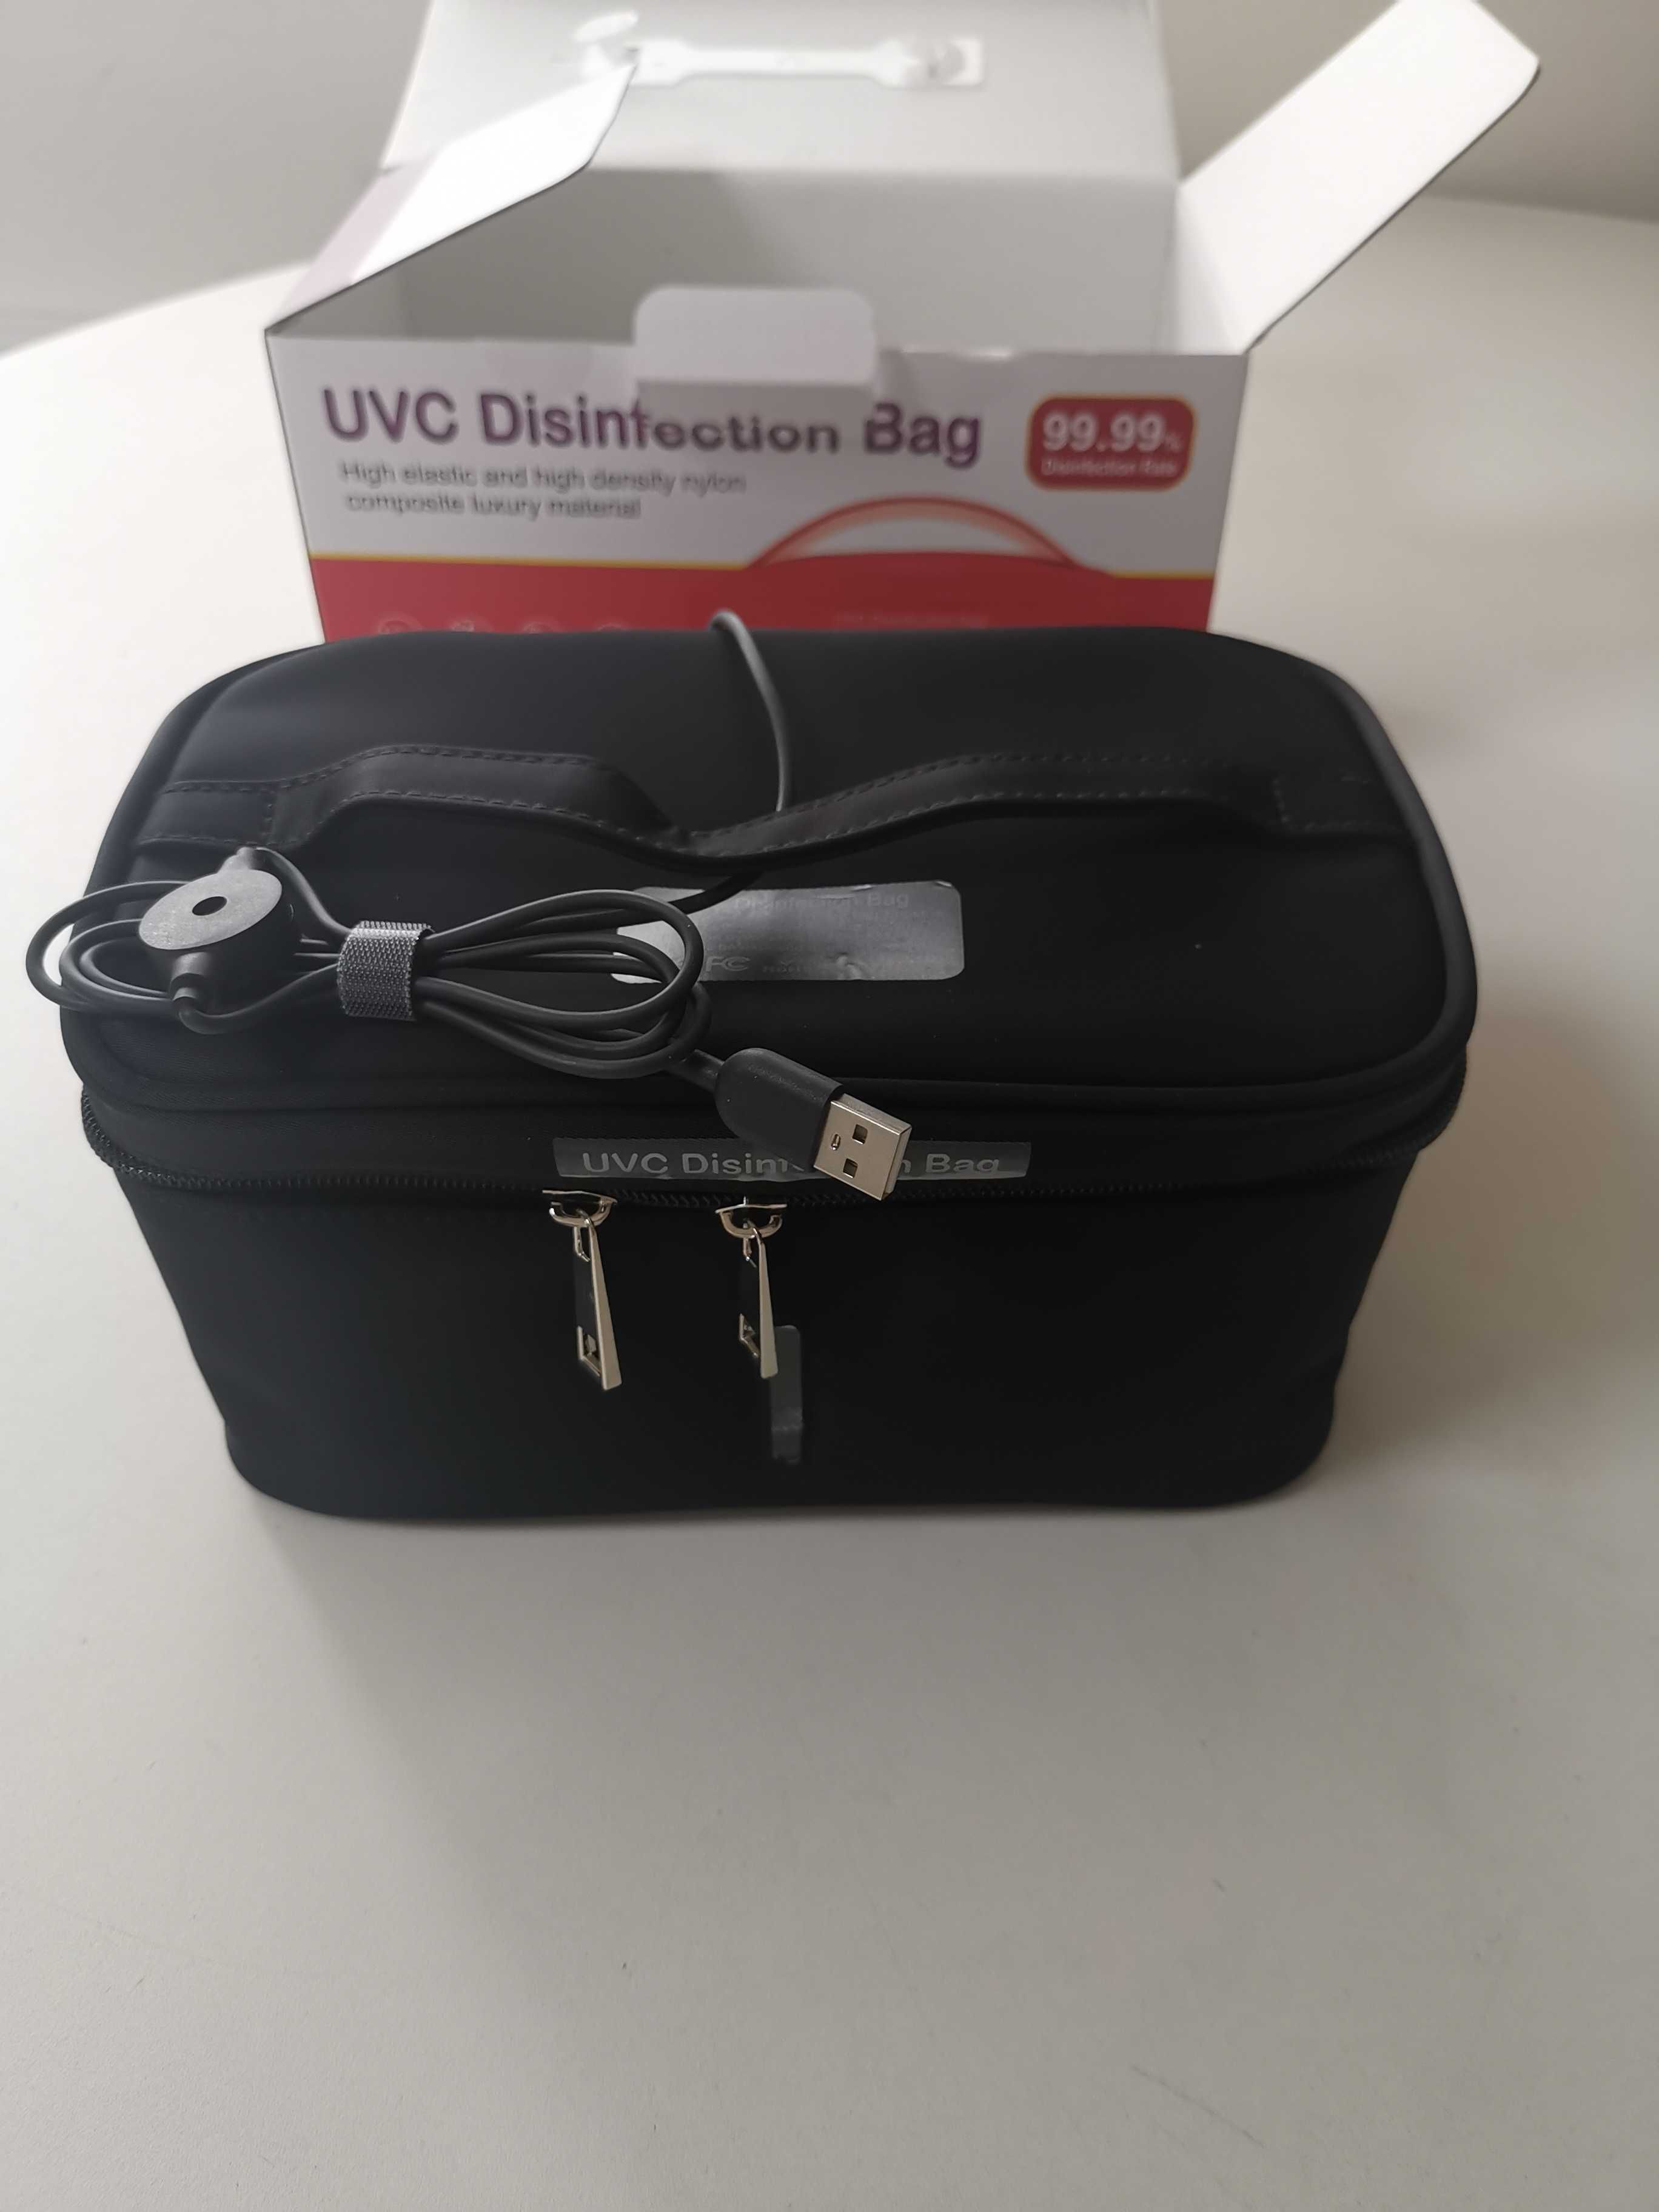 Mala Portátil de Desinfeção / Esterilização UV -  UVC Disinfection Bag